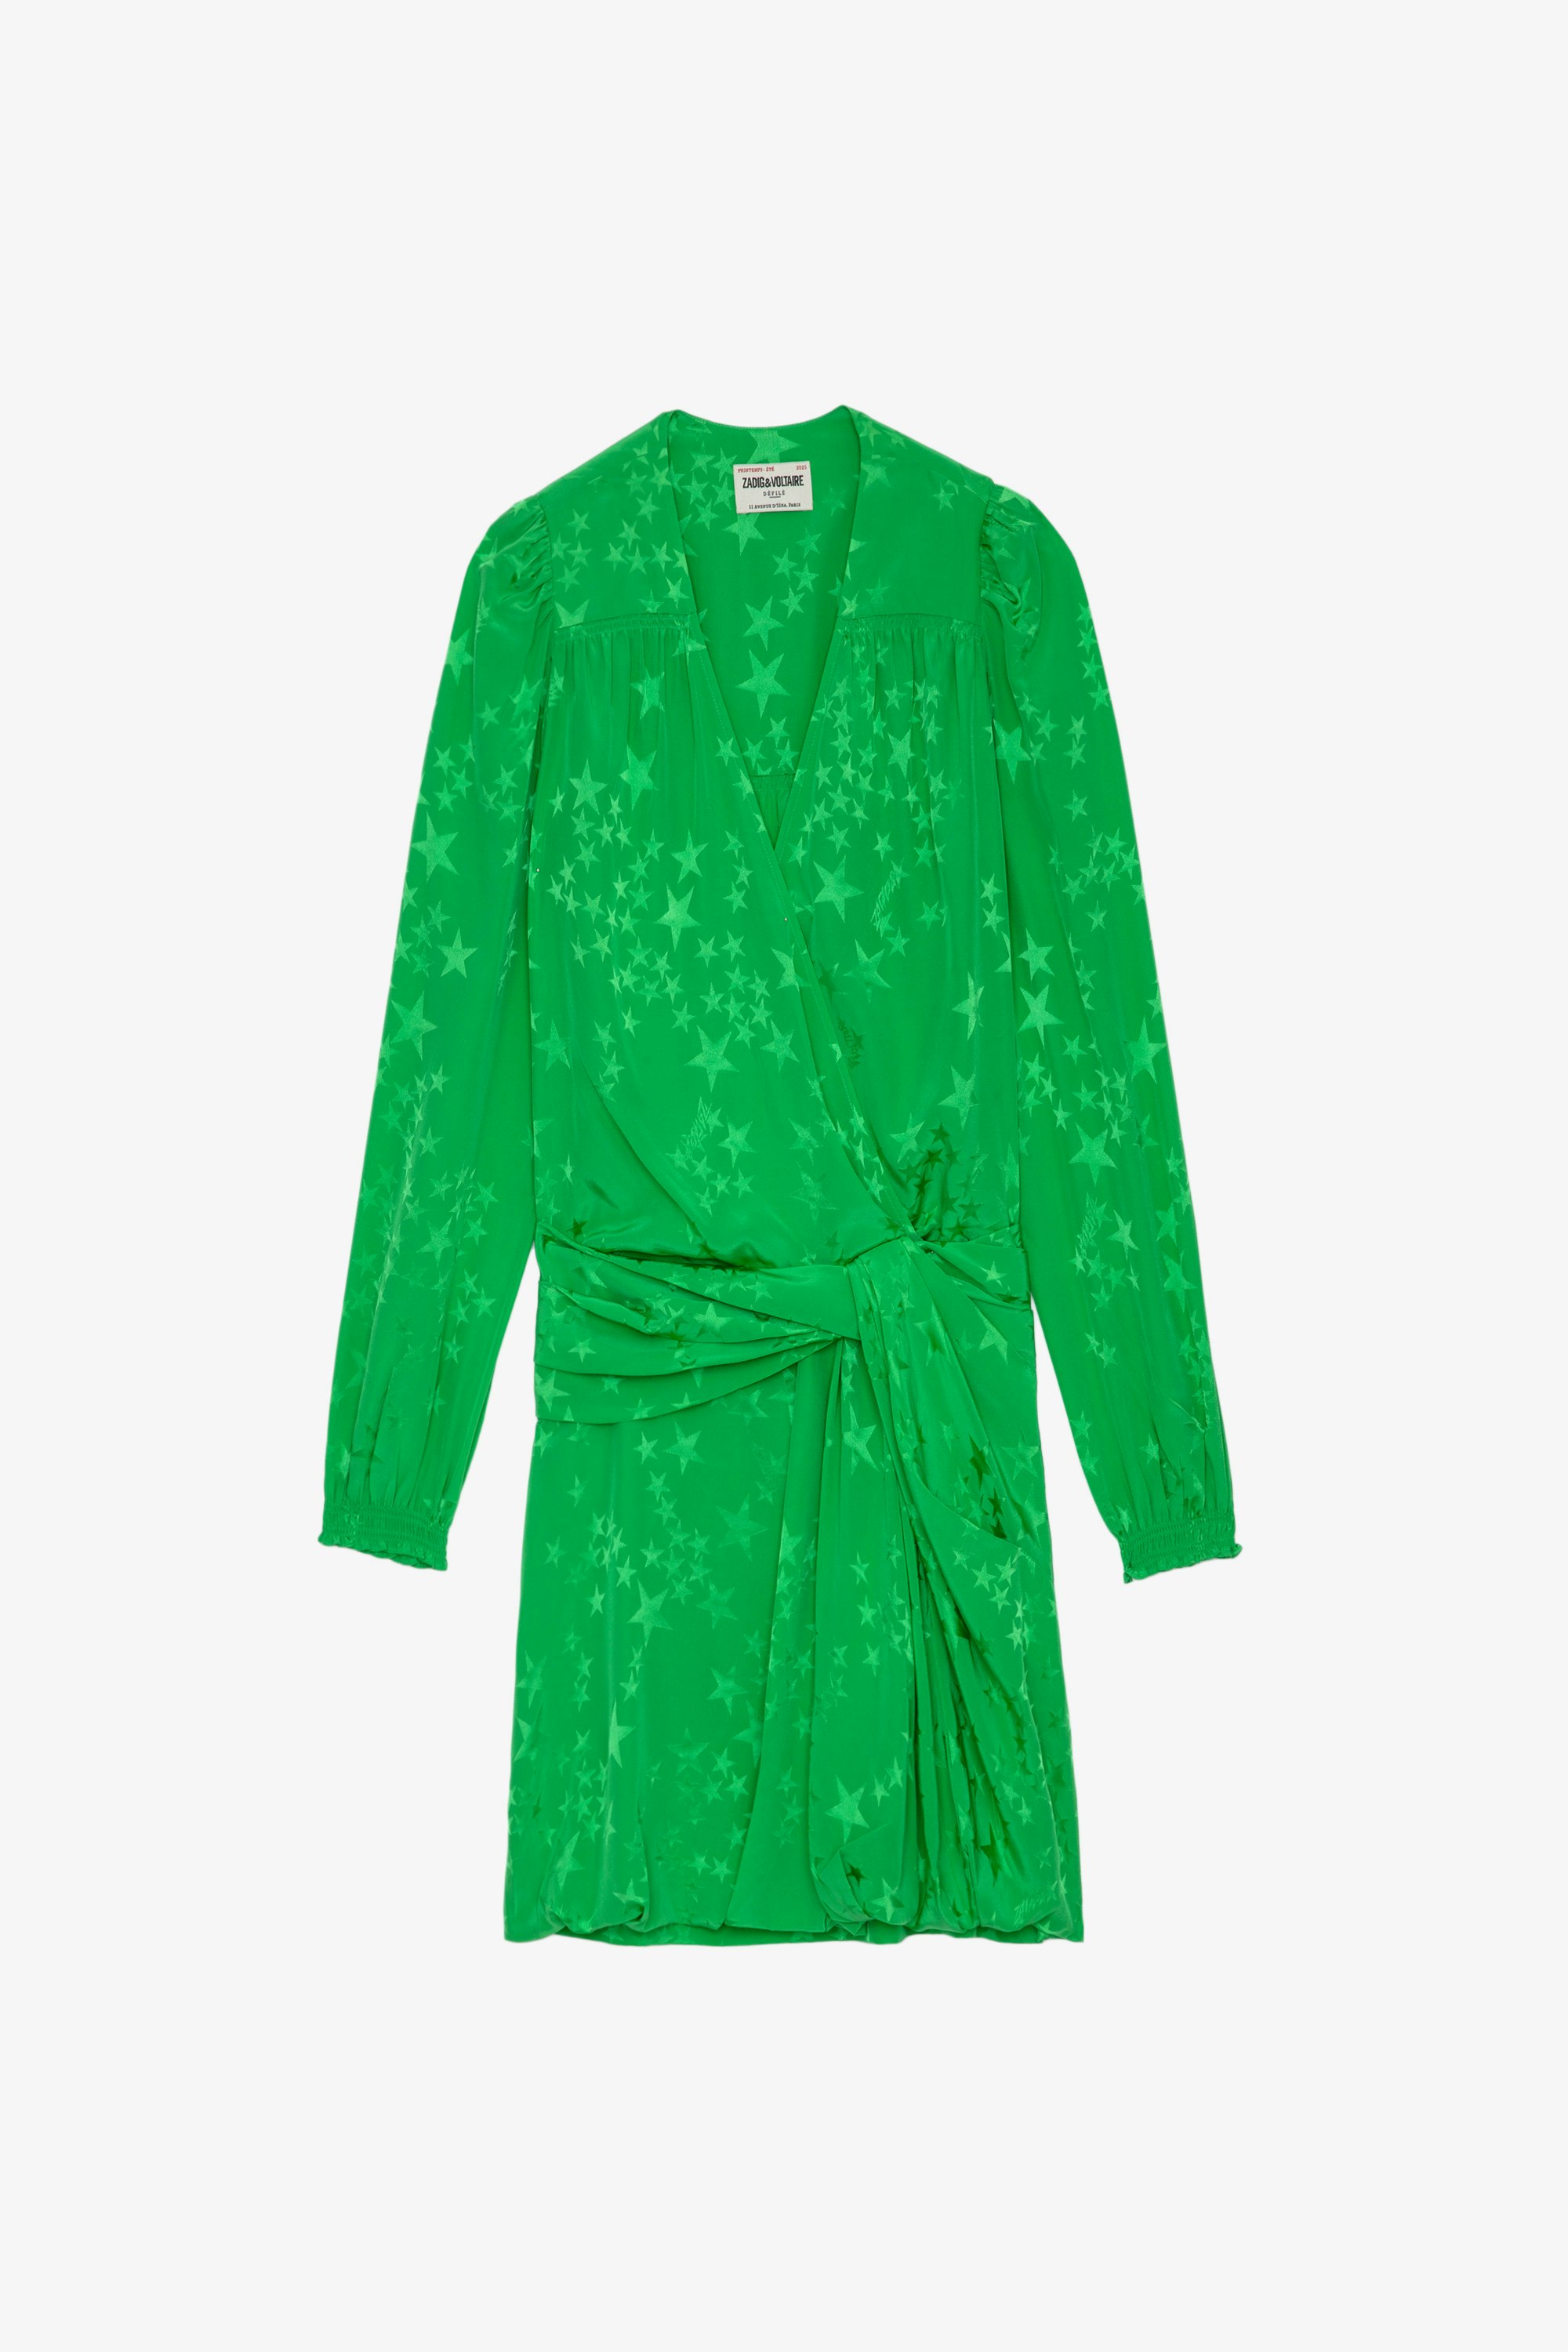 Recol シルク ワンピース アップルグリーンのシルクジャカードショートドレス。スター飾りとウエストマーク レディース